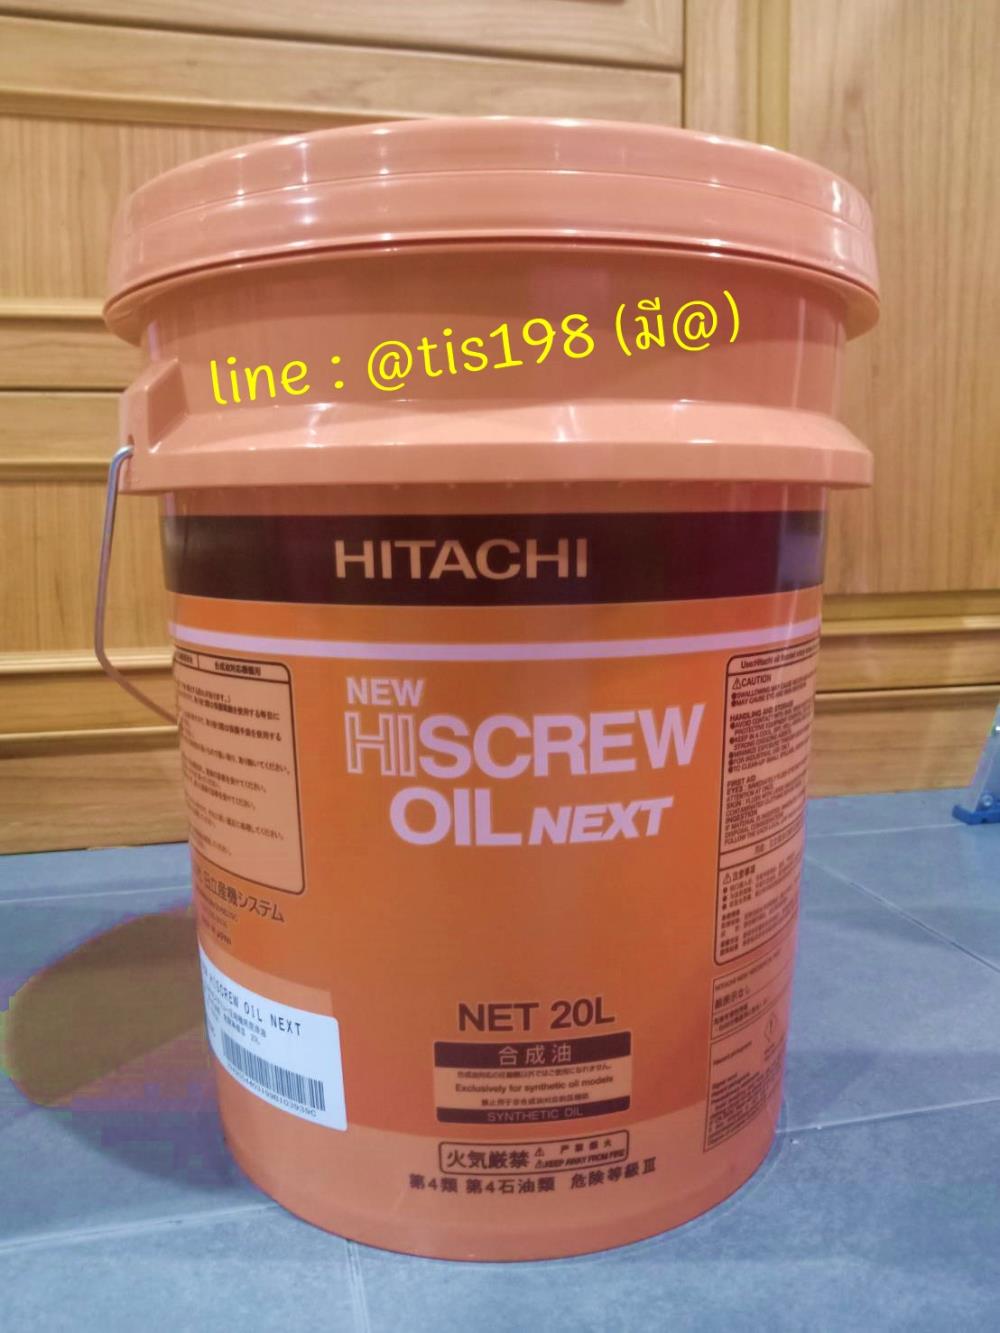 น้ำมัน hitachi new hiscrew oil next,น้ำมัน hitachi  น้ำมัน hitachi น้ำมันปั๊มลมสกรู,hitachi,Pumps, Valves and Accessories/Pumps/Oil Pump